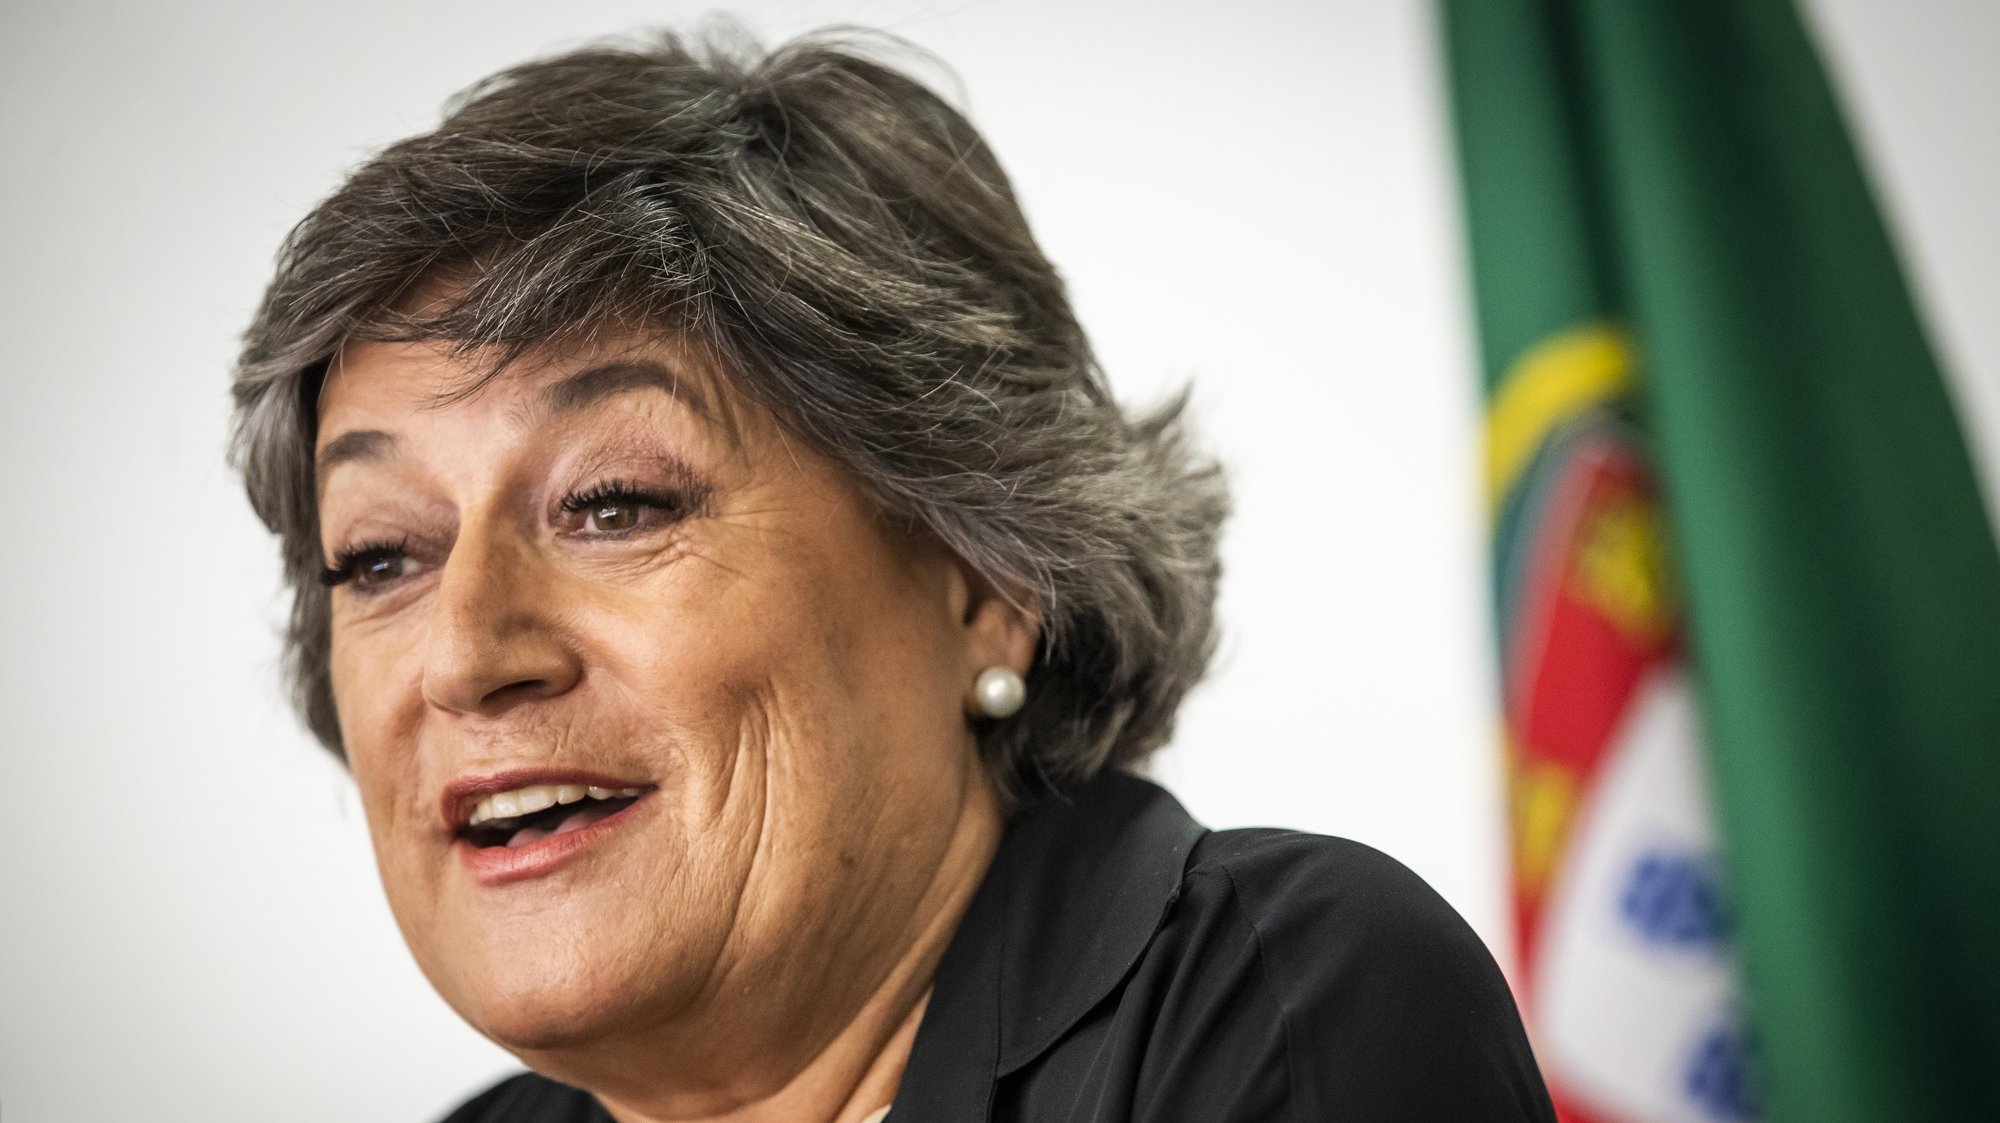 A ex-eurodeputada socialista, Ana Gomes, durante o anúncio da sua candidatura à Presidência da República, na Casa da Imprensa, em Lisboa,10 de setembro de 2020. JOSÉ SENA GOULÃO/LUSA